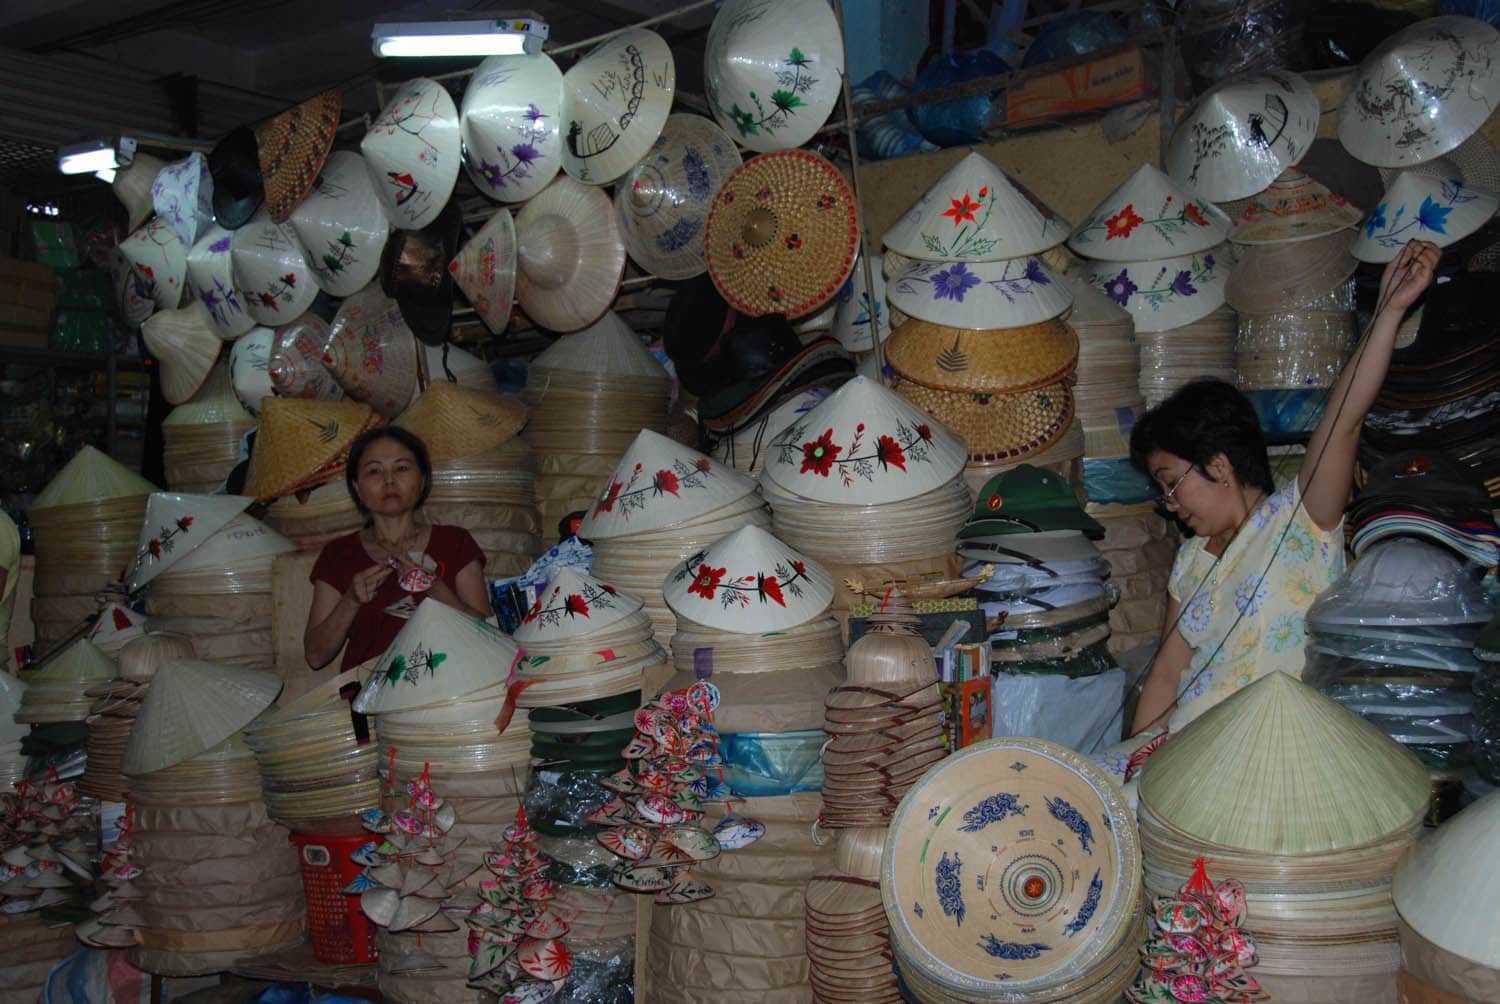 Les chapeaux coniques emblématiques du Vietnam